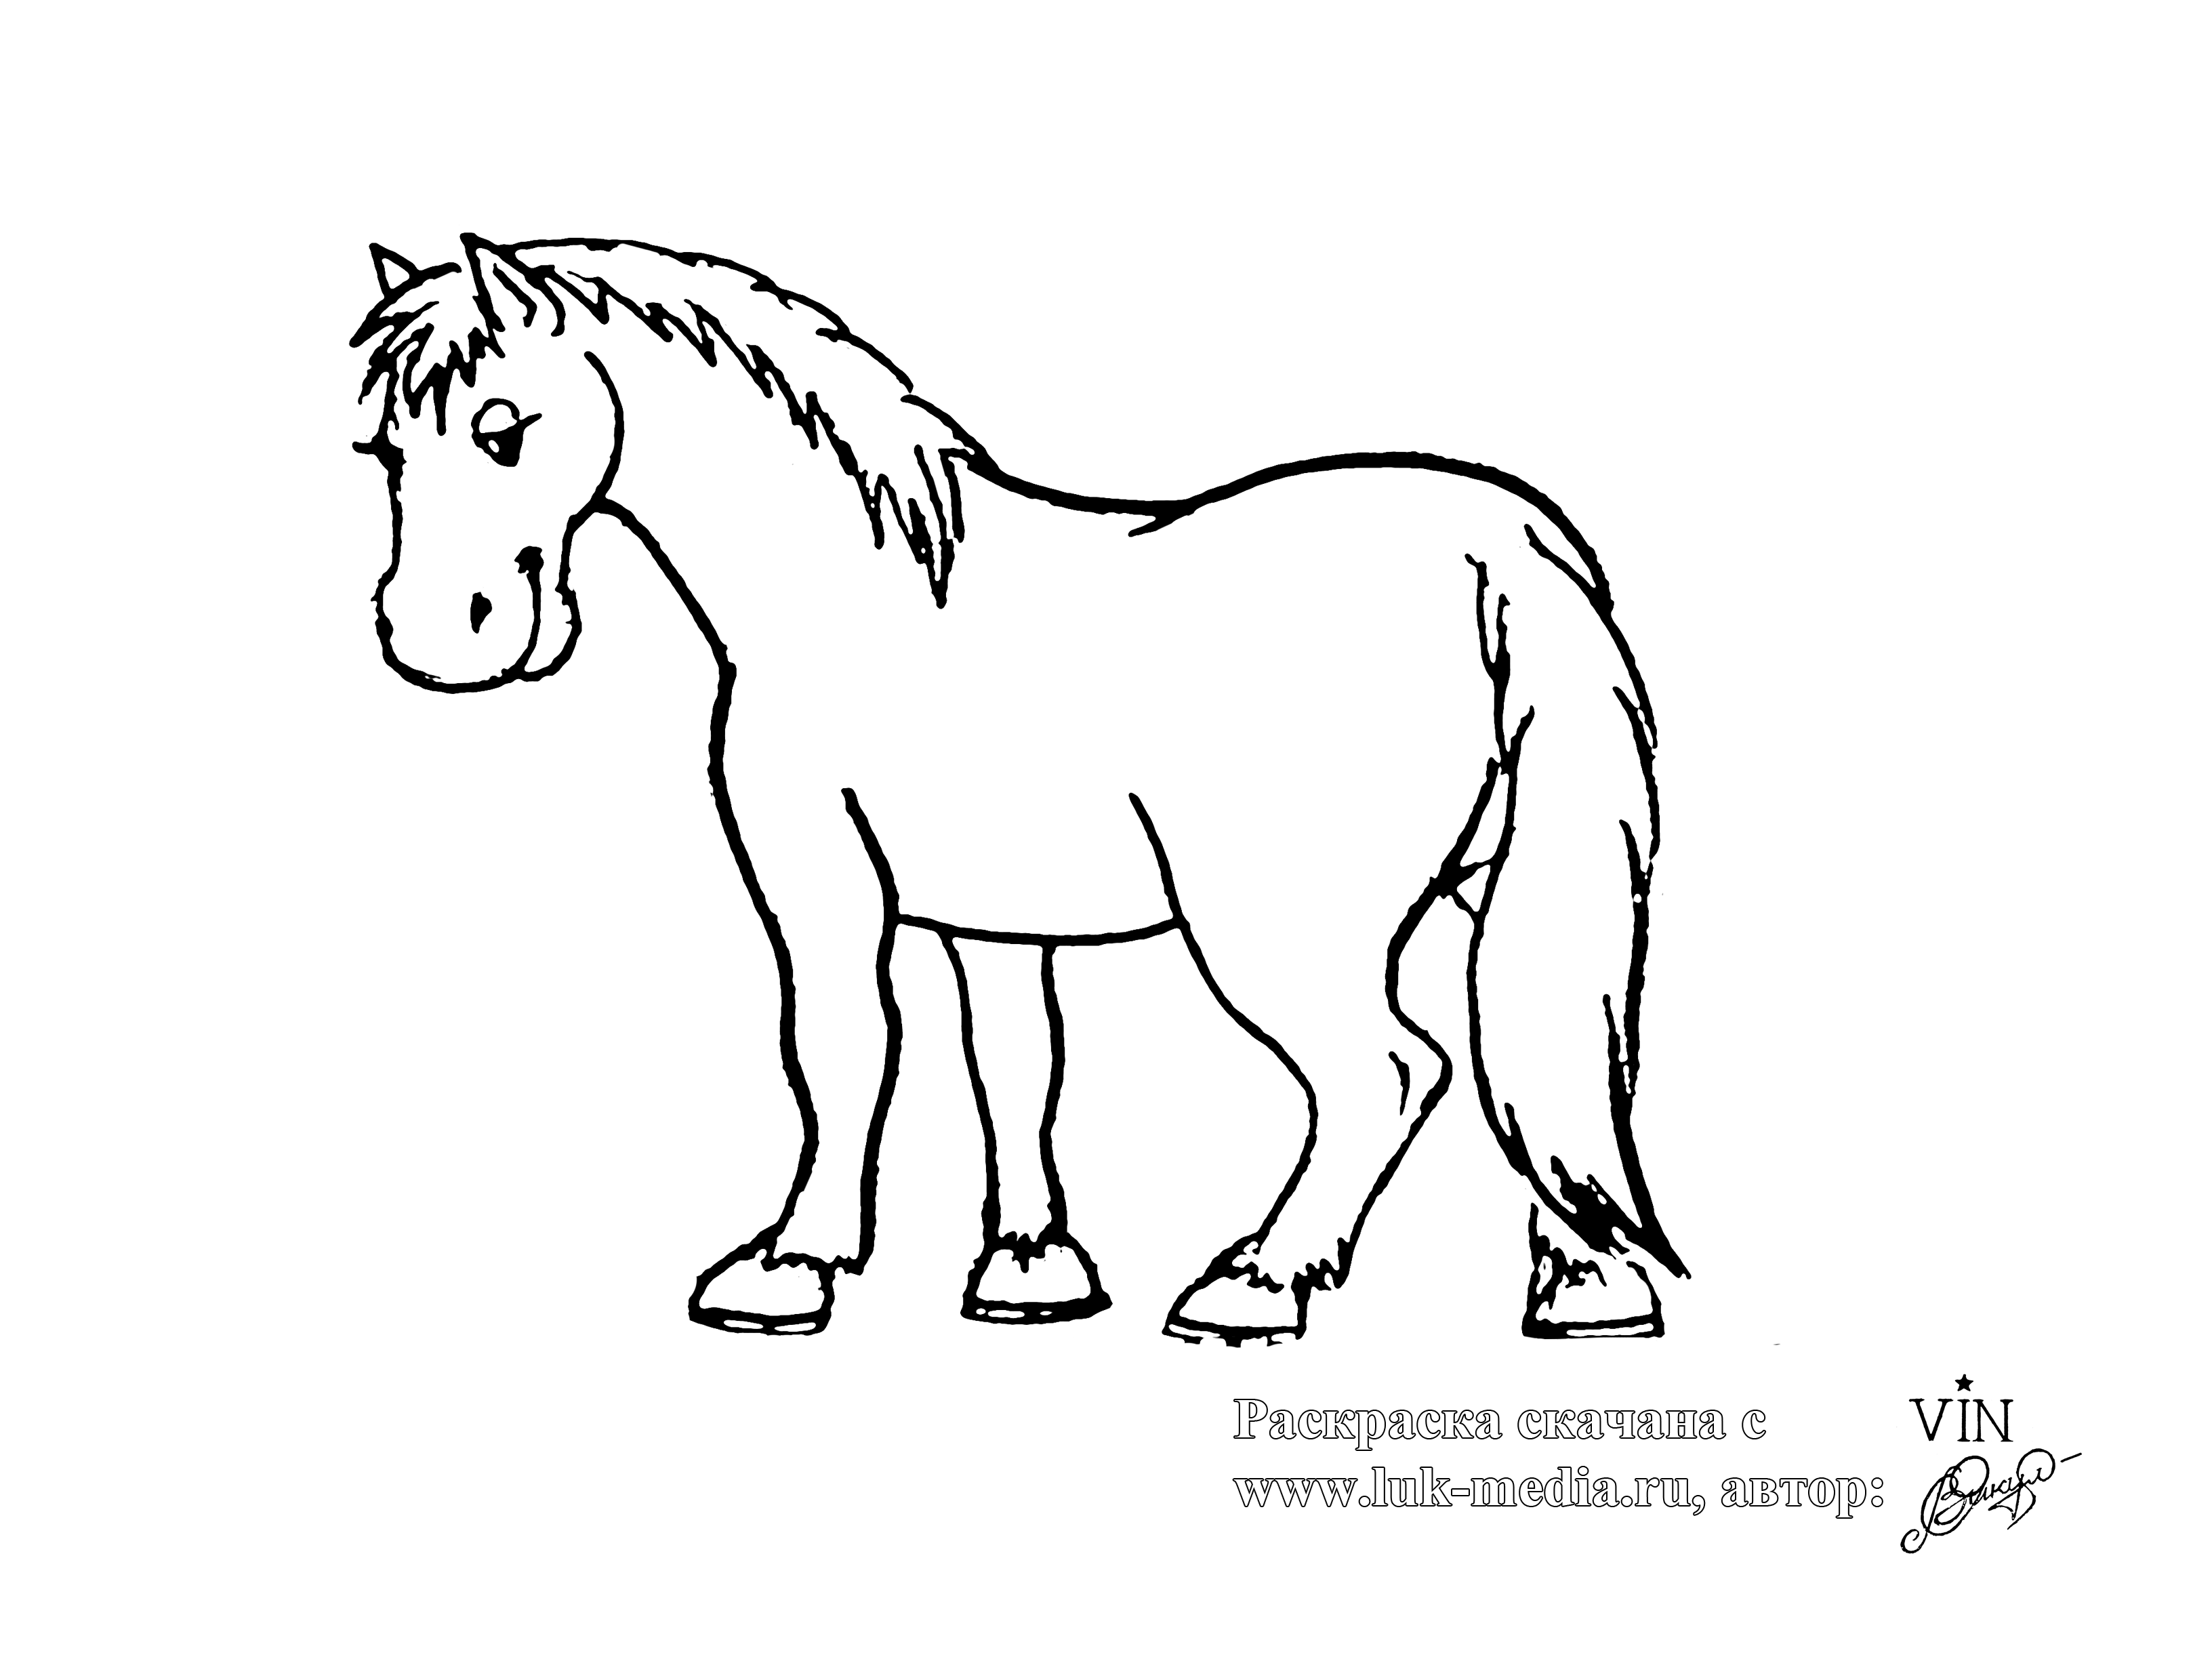 Раскрасить лошадку. Раскраска. Лошадка. Лошадка раскраска для детей. Конь раскраска для детей. Лошадь картинка для детей раскраска.